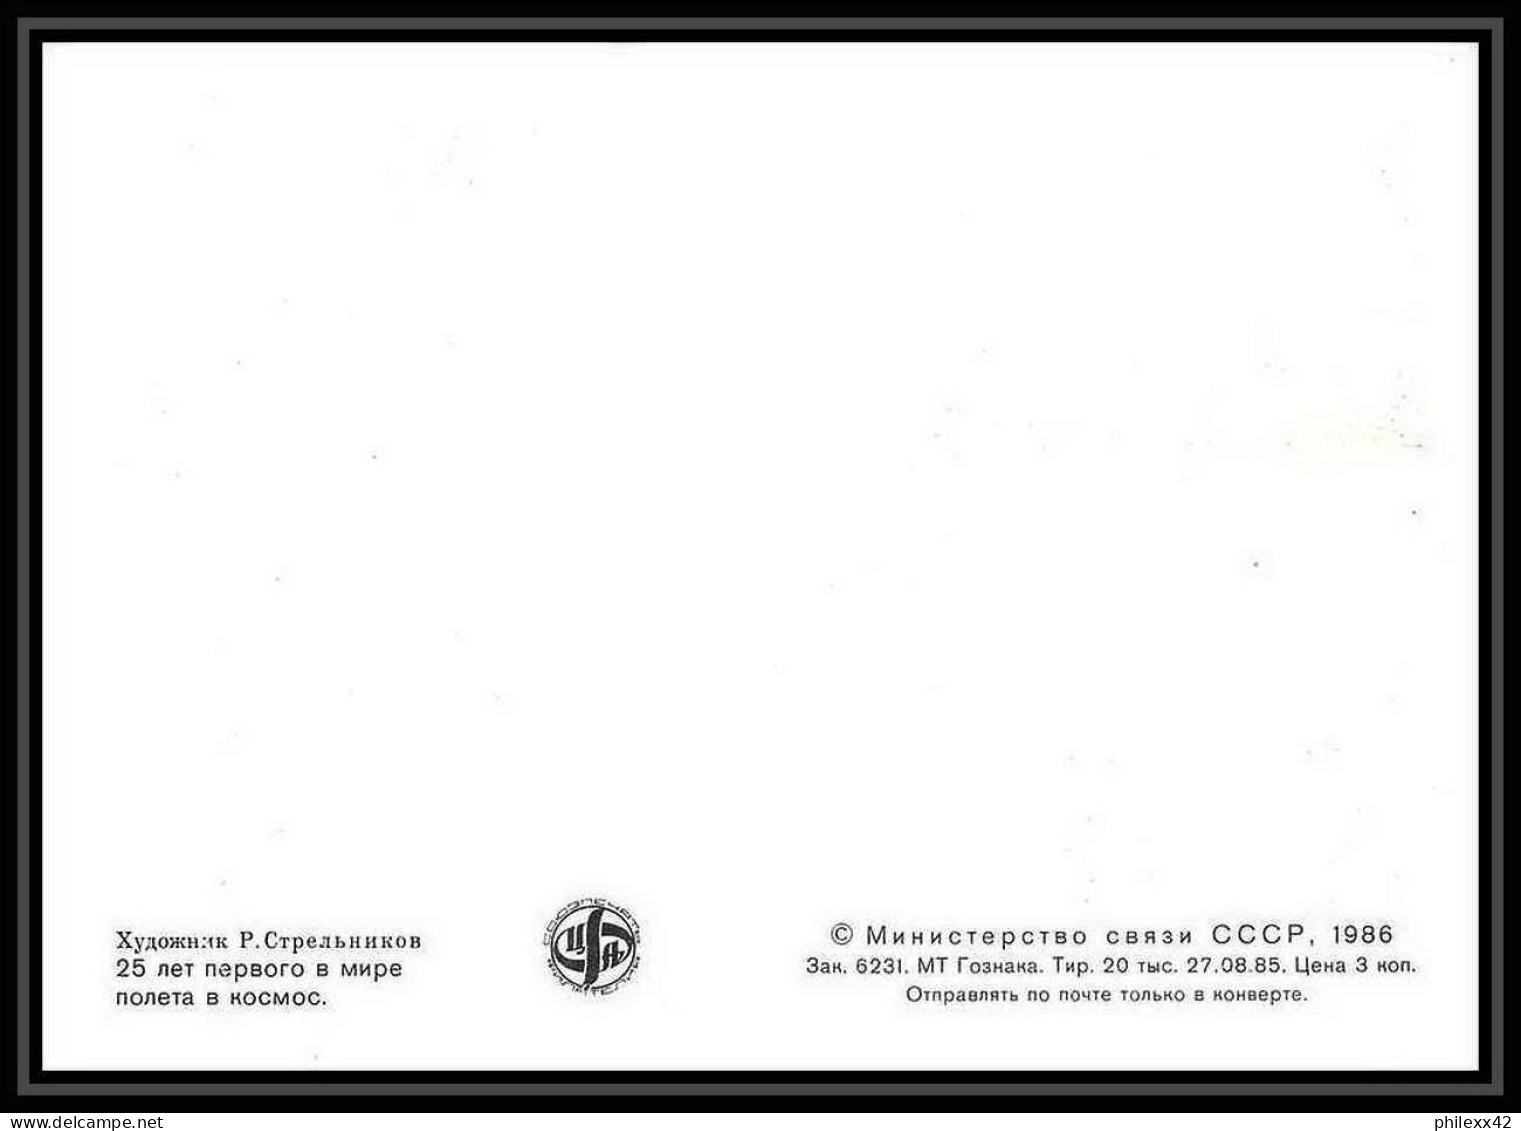 9274/ Espace (space Raumfahrt) Carte Maximum (card) 12/4/1986 Tsiolkovski (Russia Urss USSR) - UdSSR